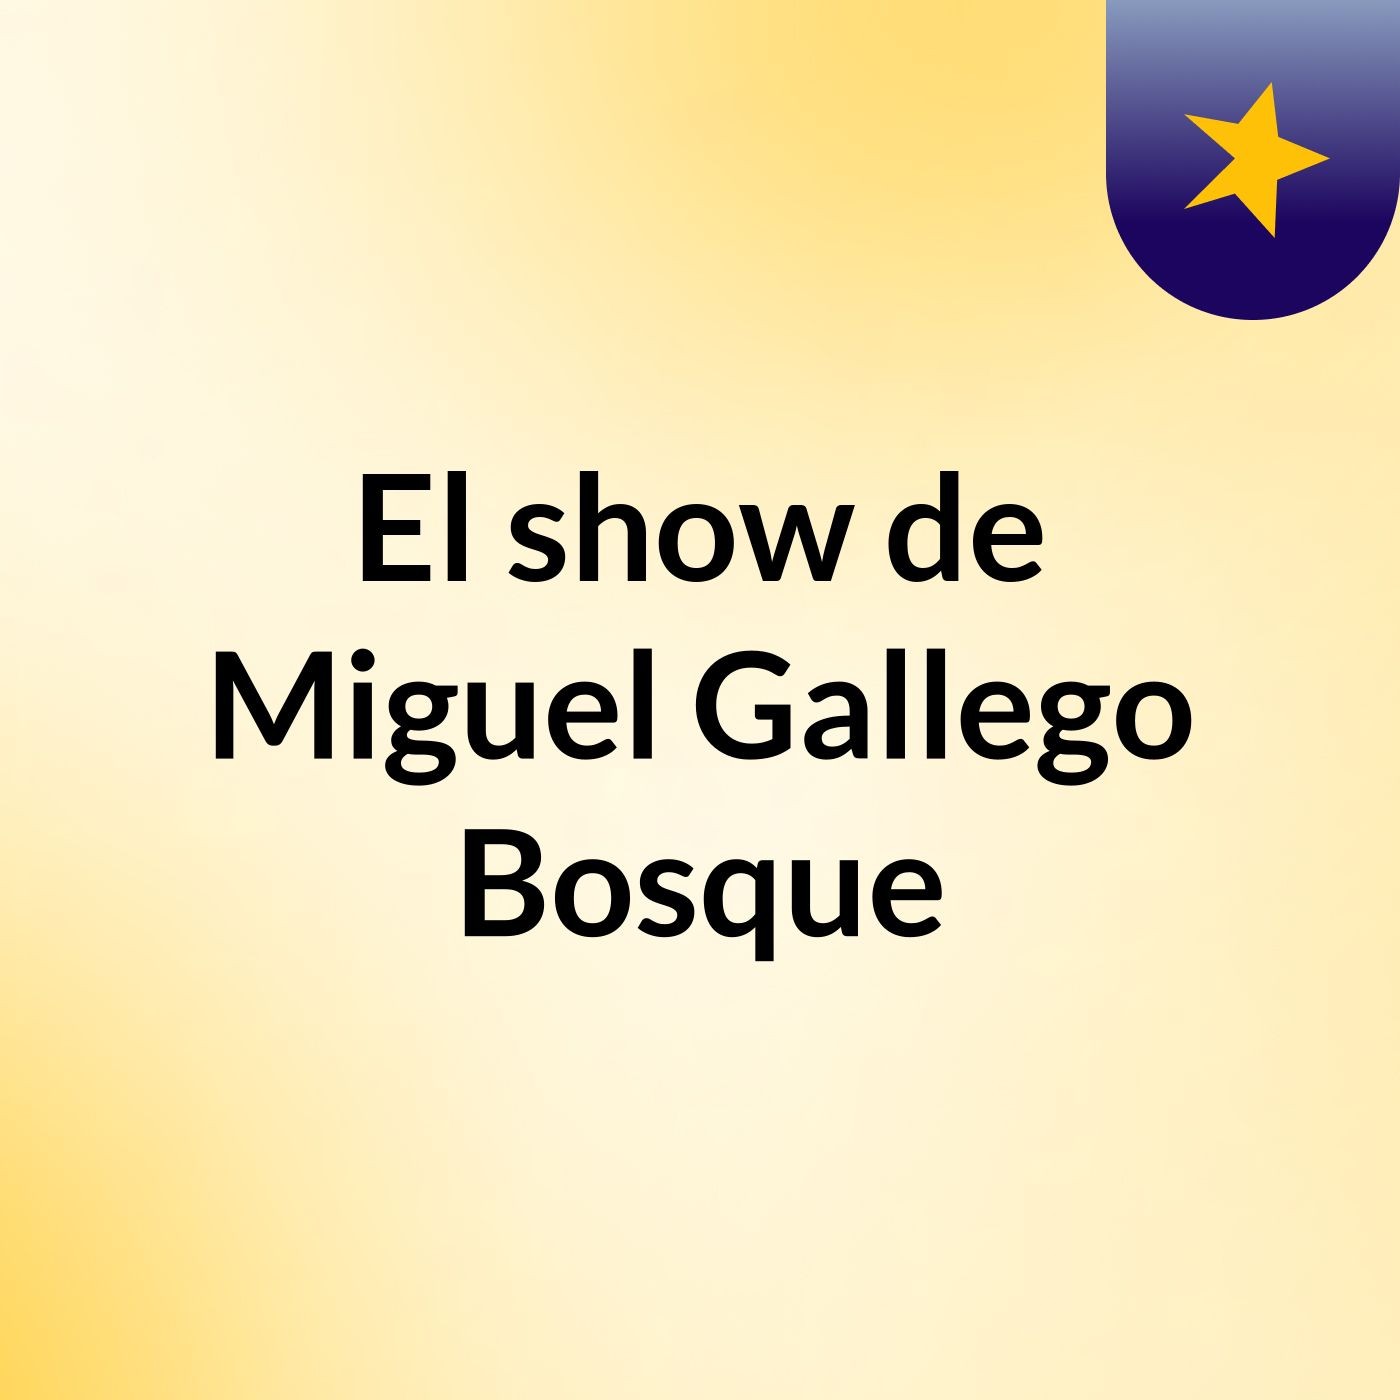 El show de Miguel Gallego Bosque